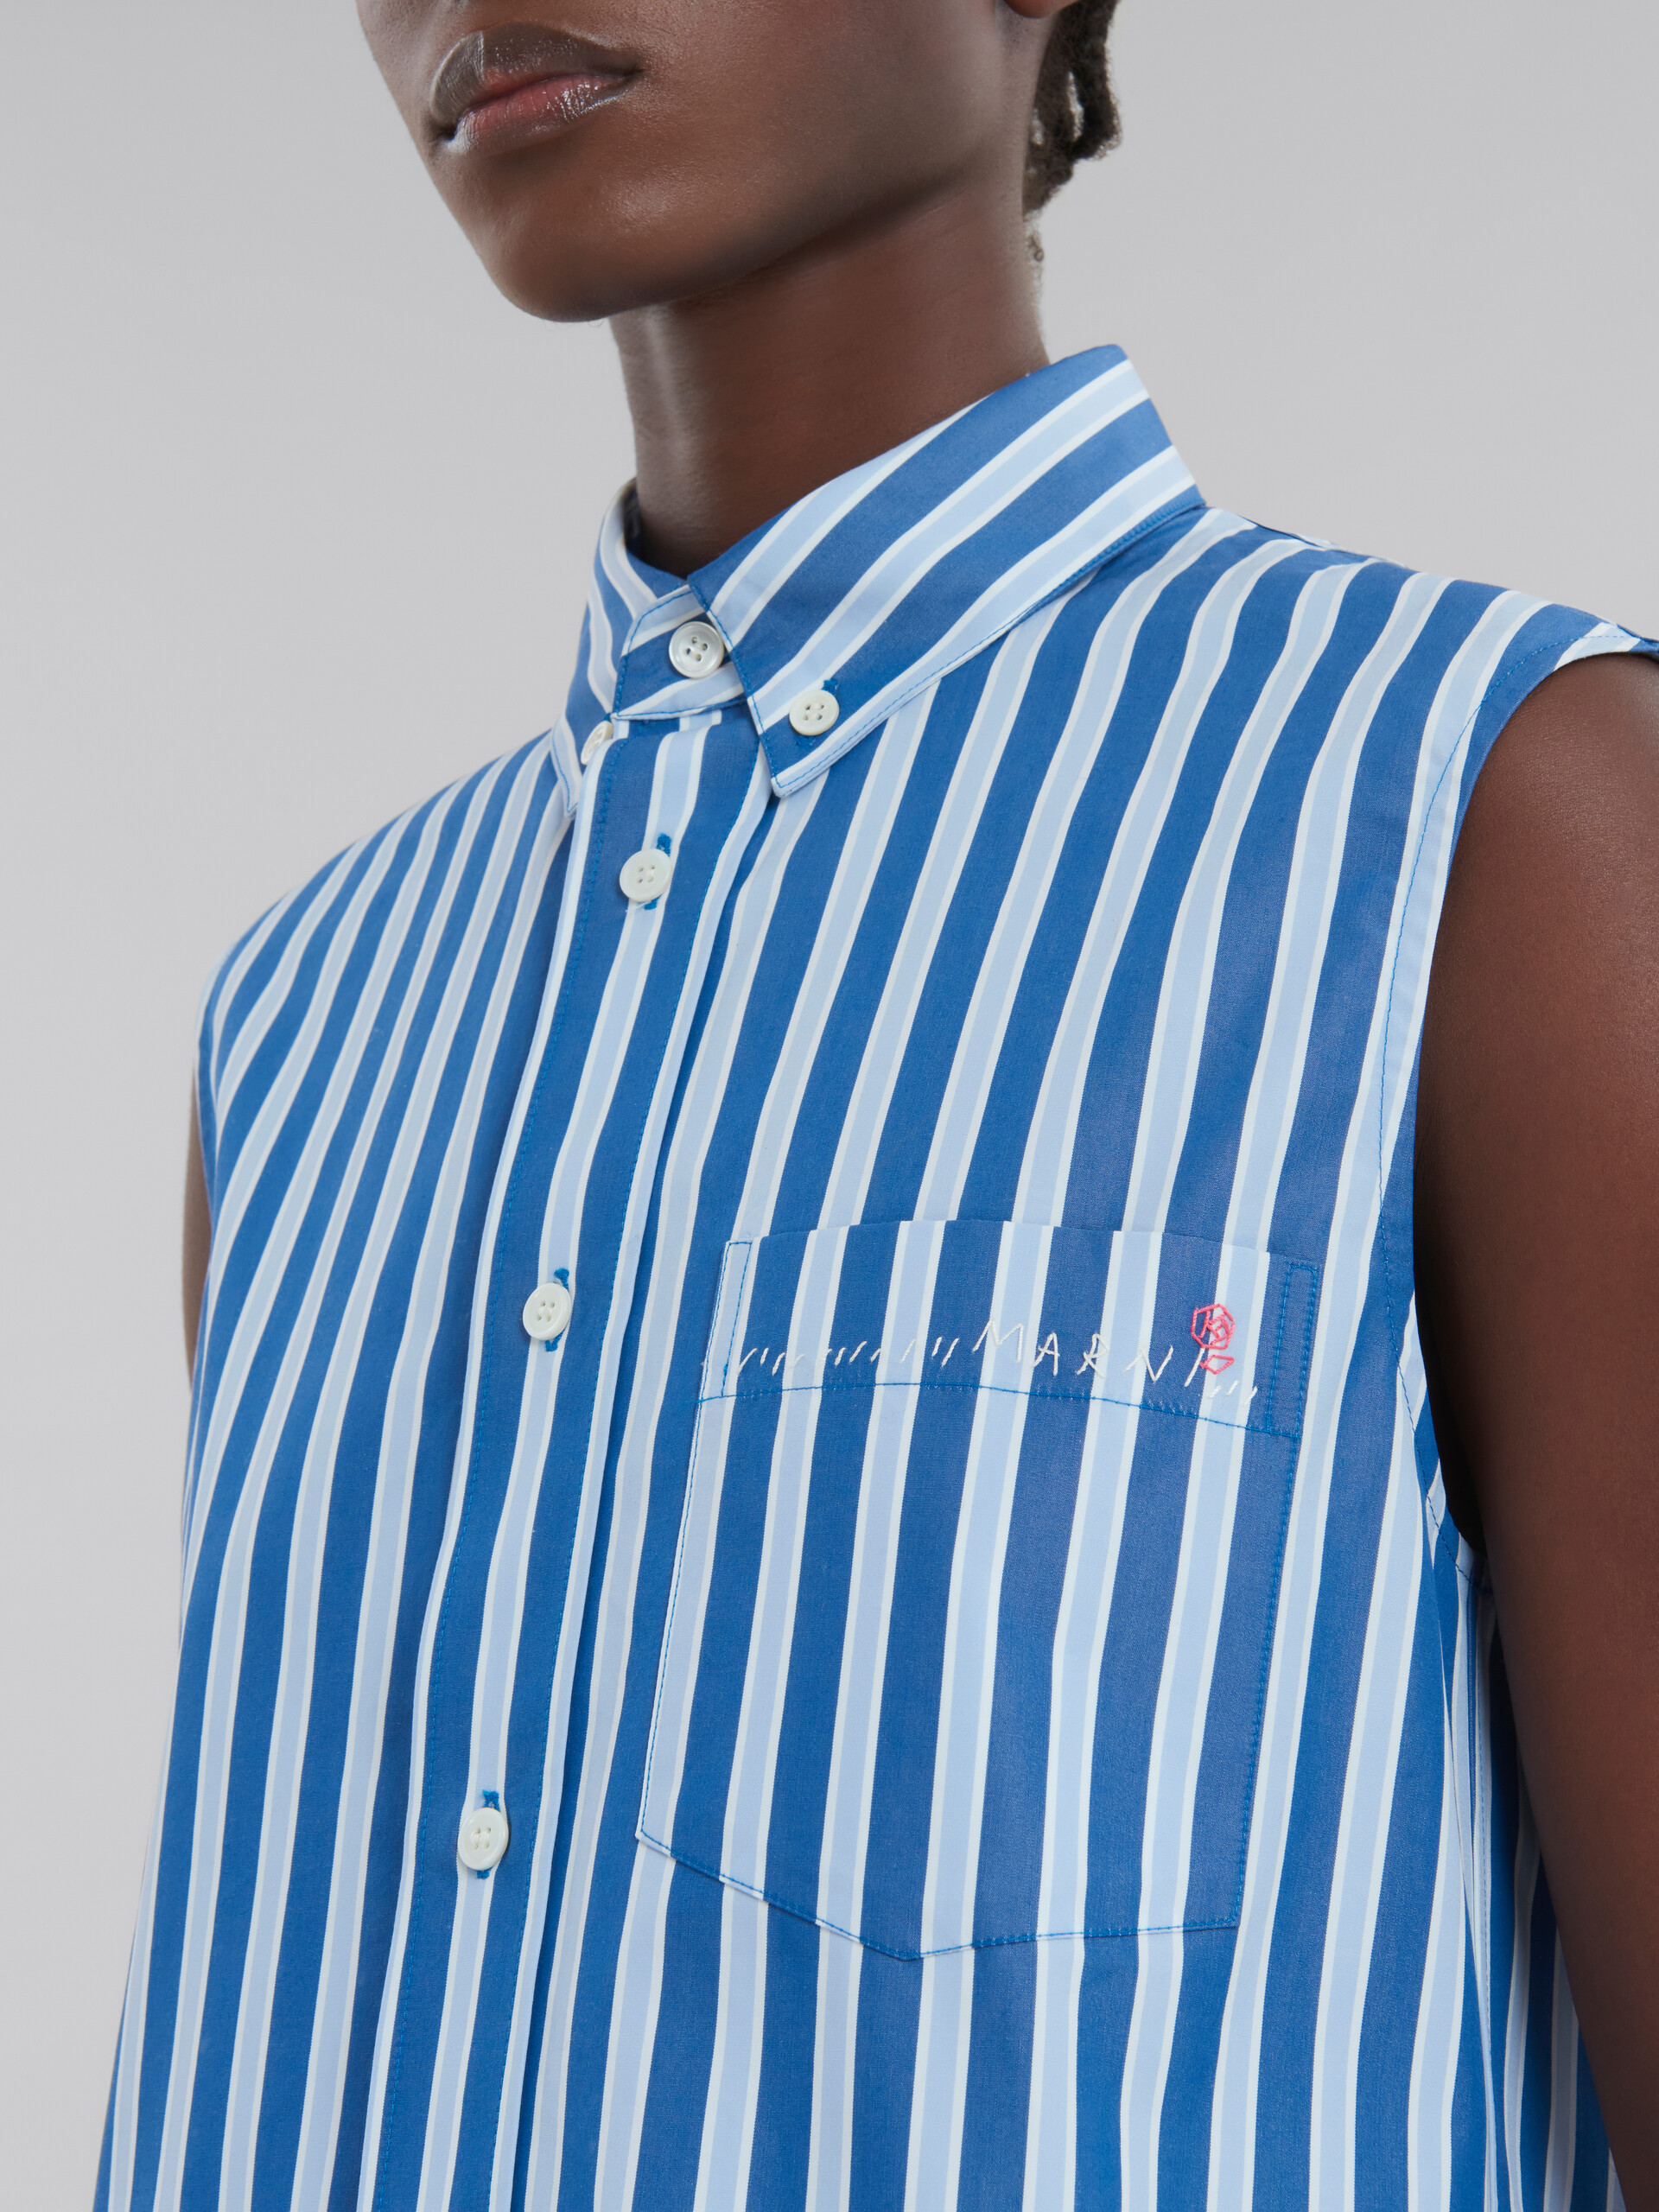 Camicia smanicata in cotone biologico a righe bianche e blu - Camicie - Image 5